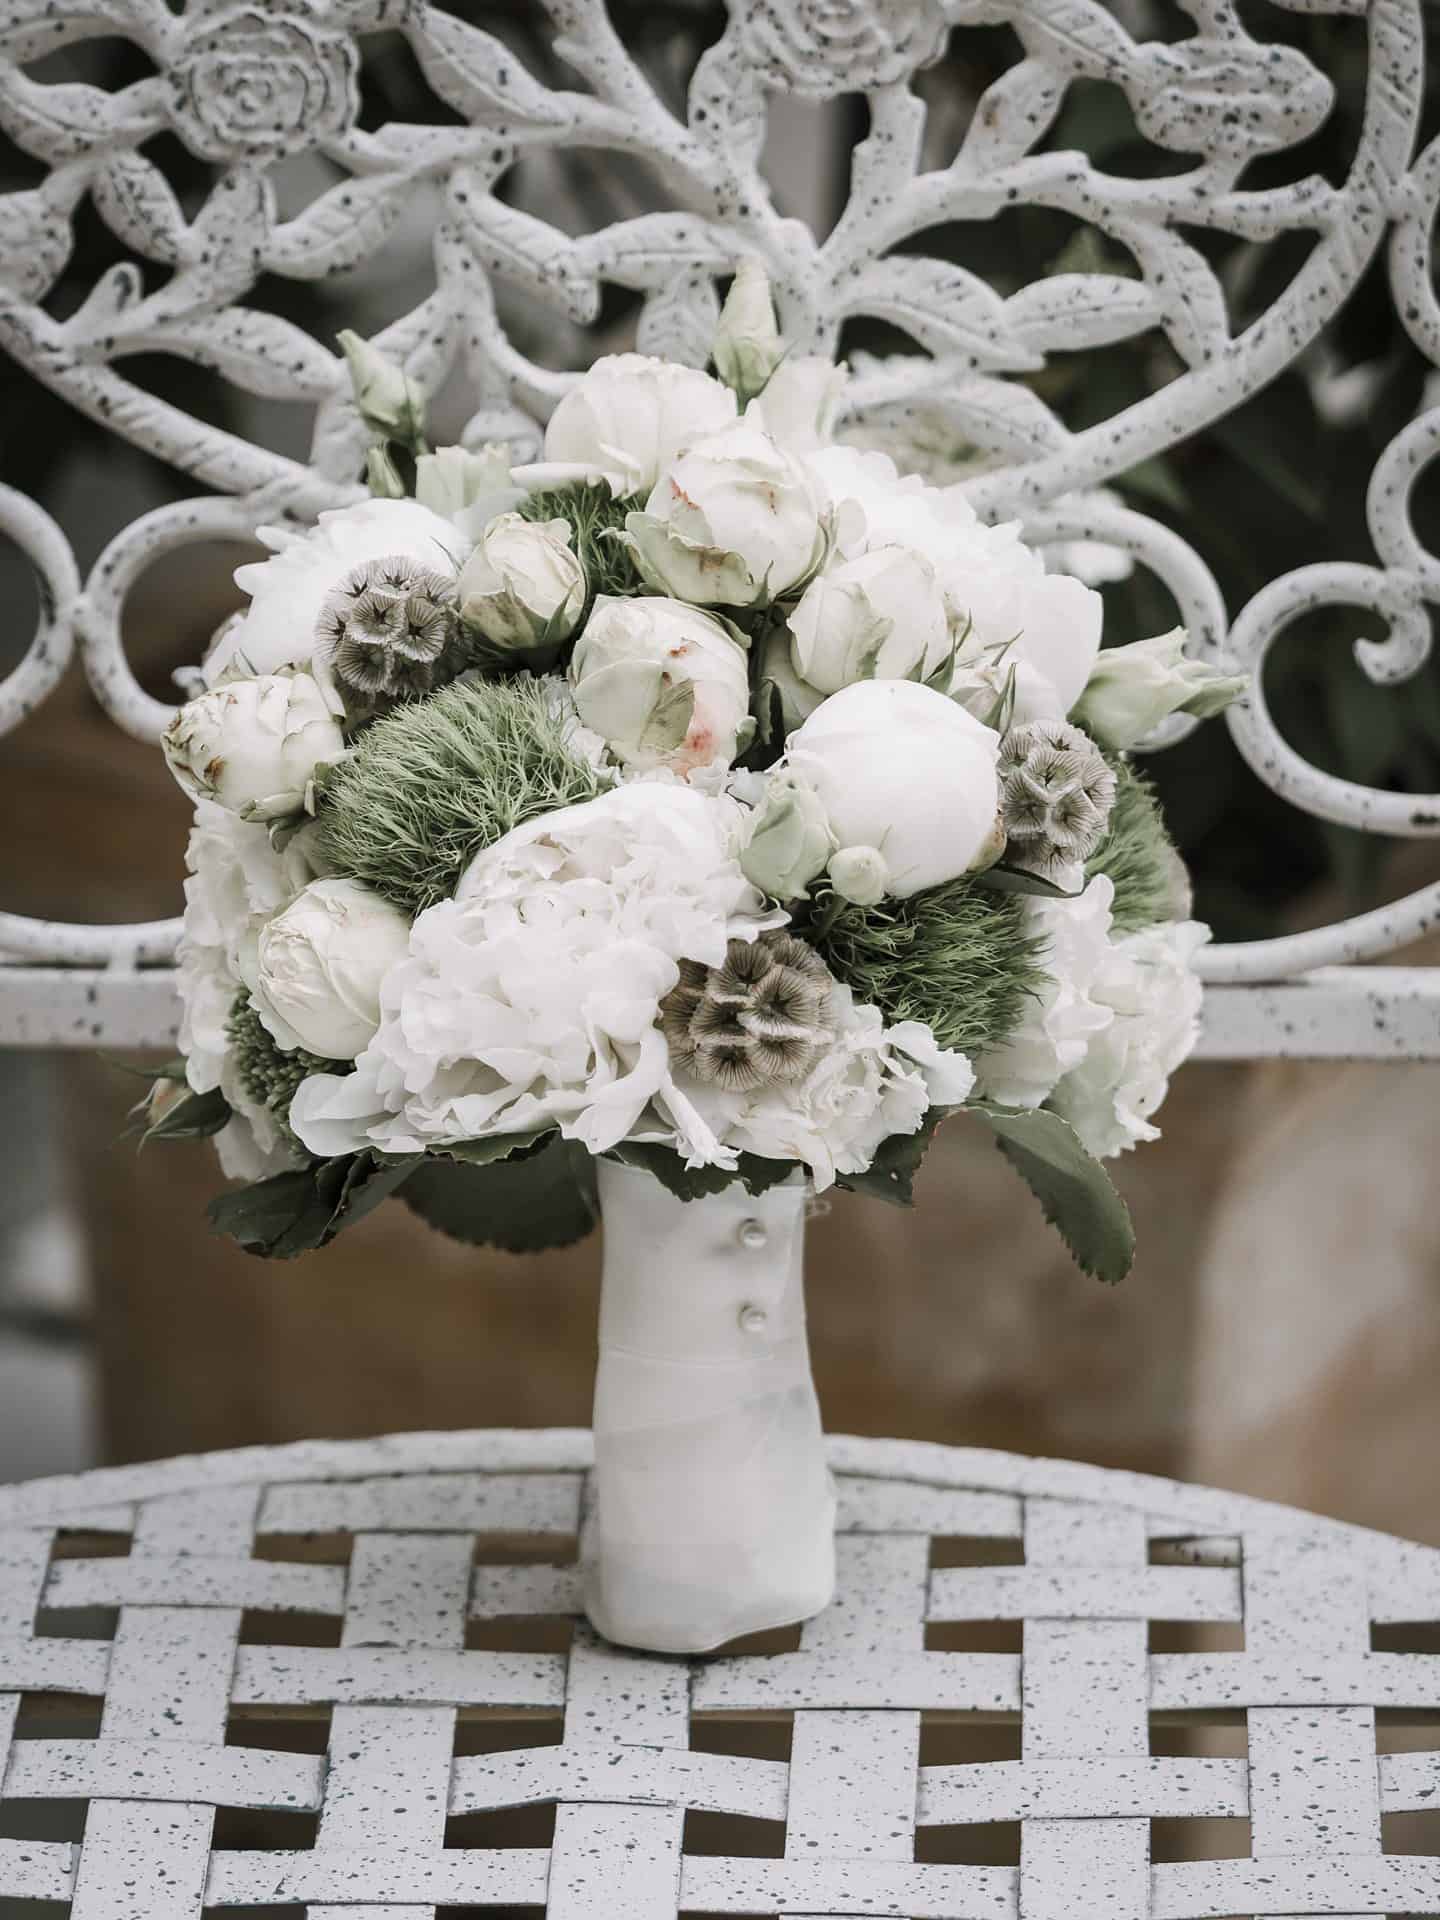 Auf einem Metallstuhl sitzt ein weiß-grüner Blumenstrauß.